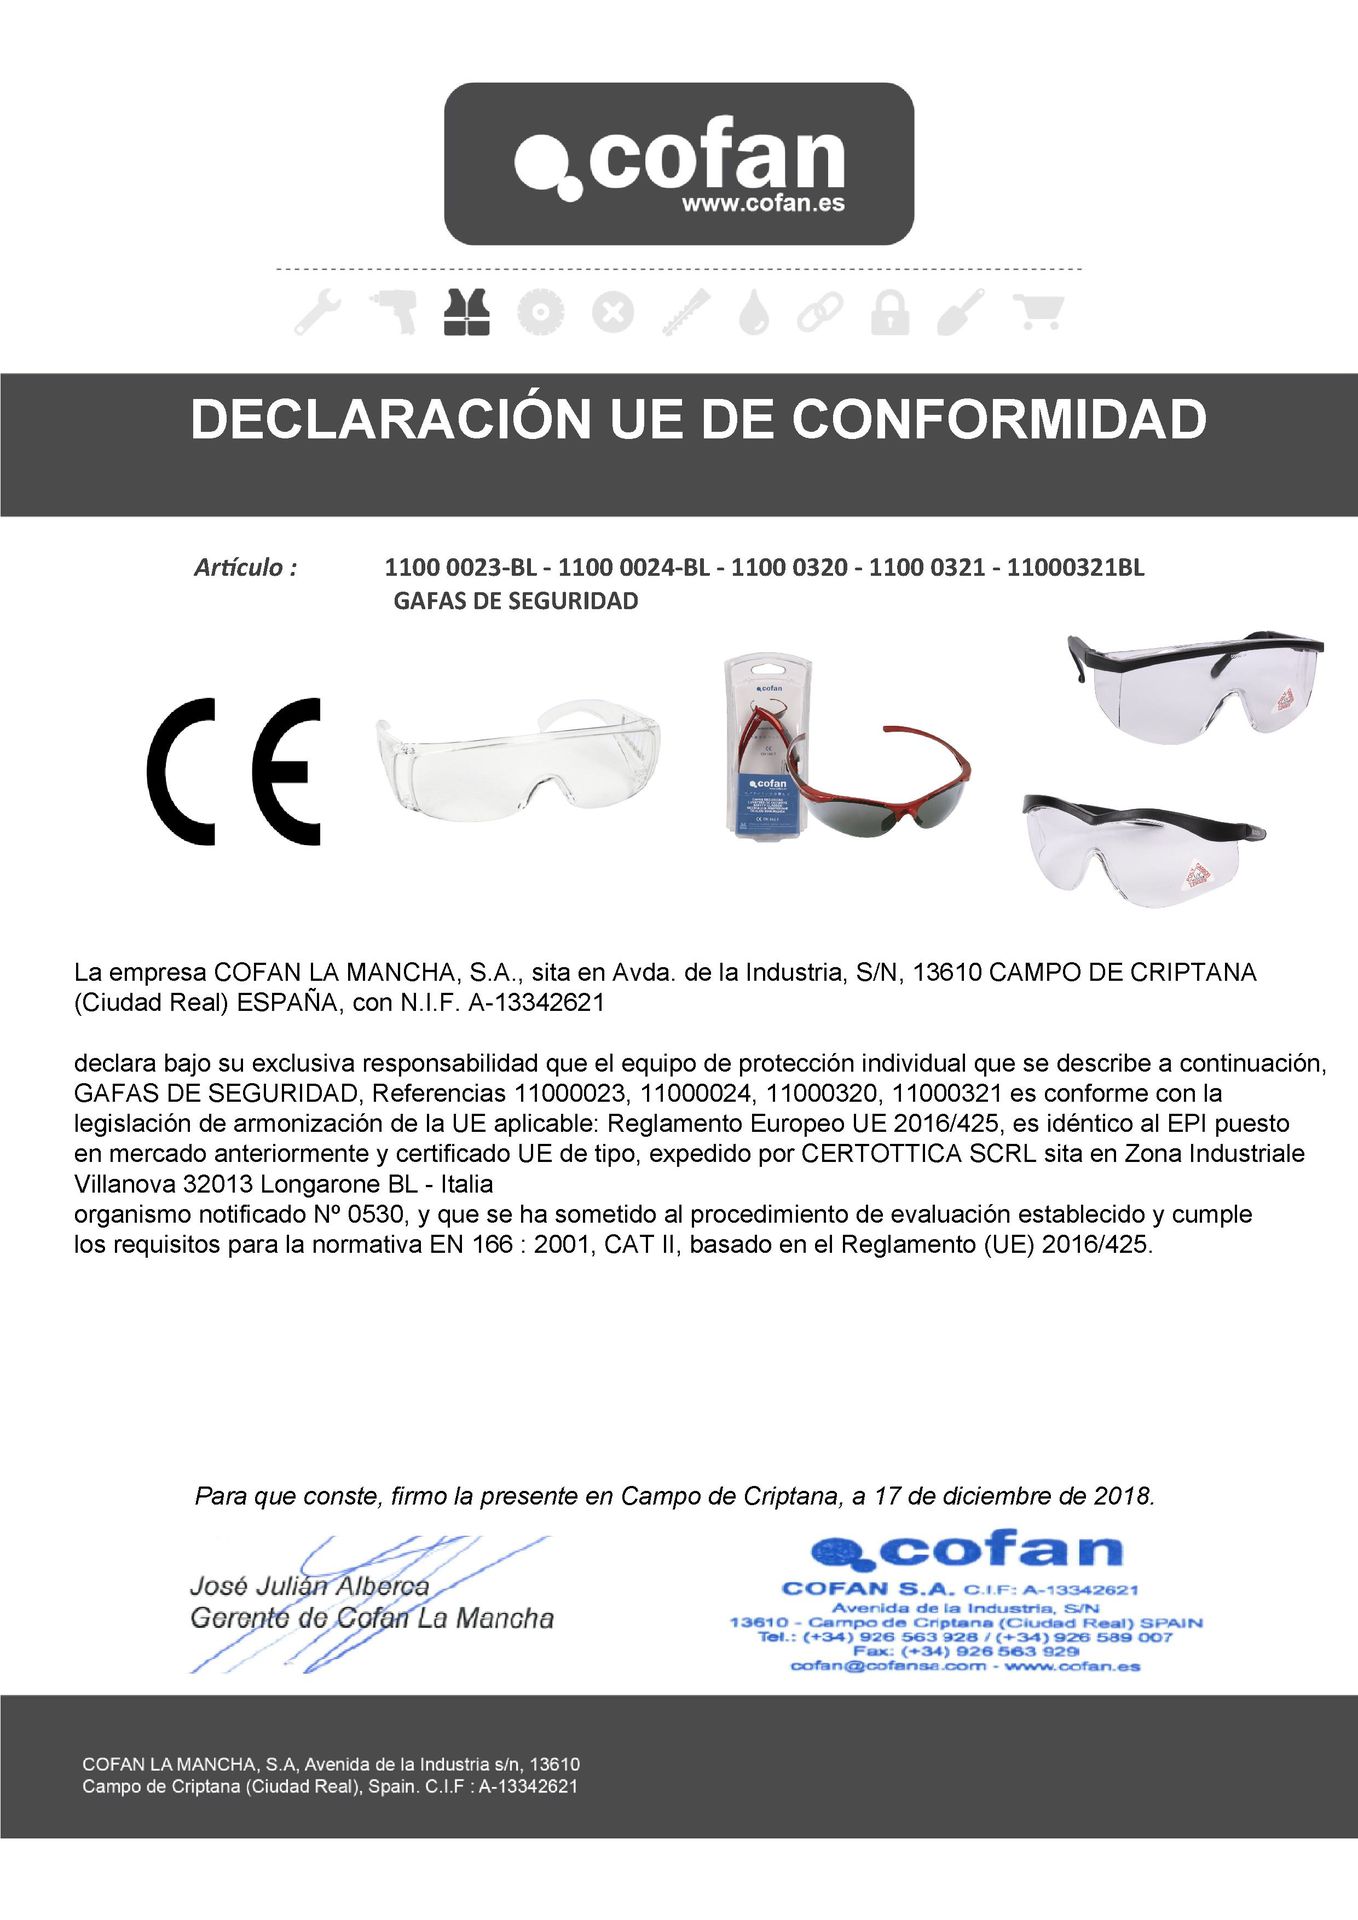 Declaración de Conformidad de Gafas de Seguridad Typical Ref. 11000320